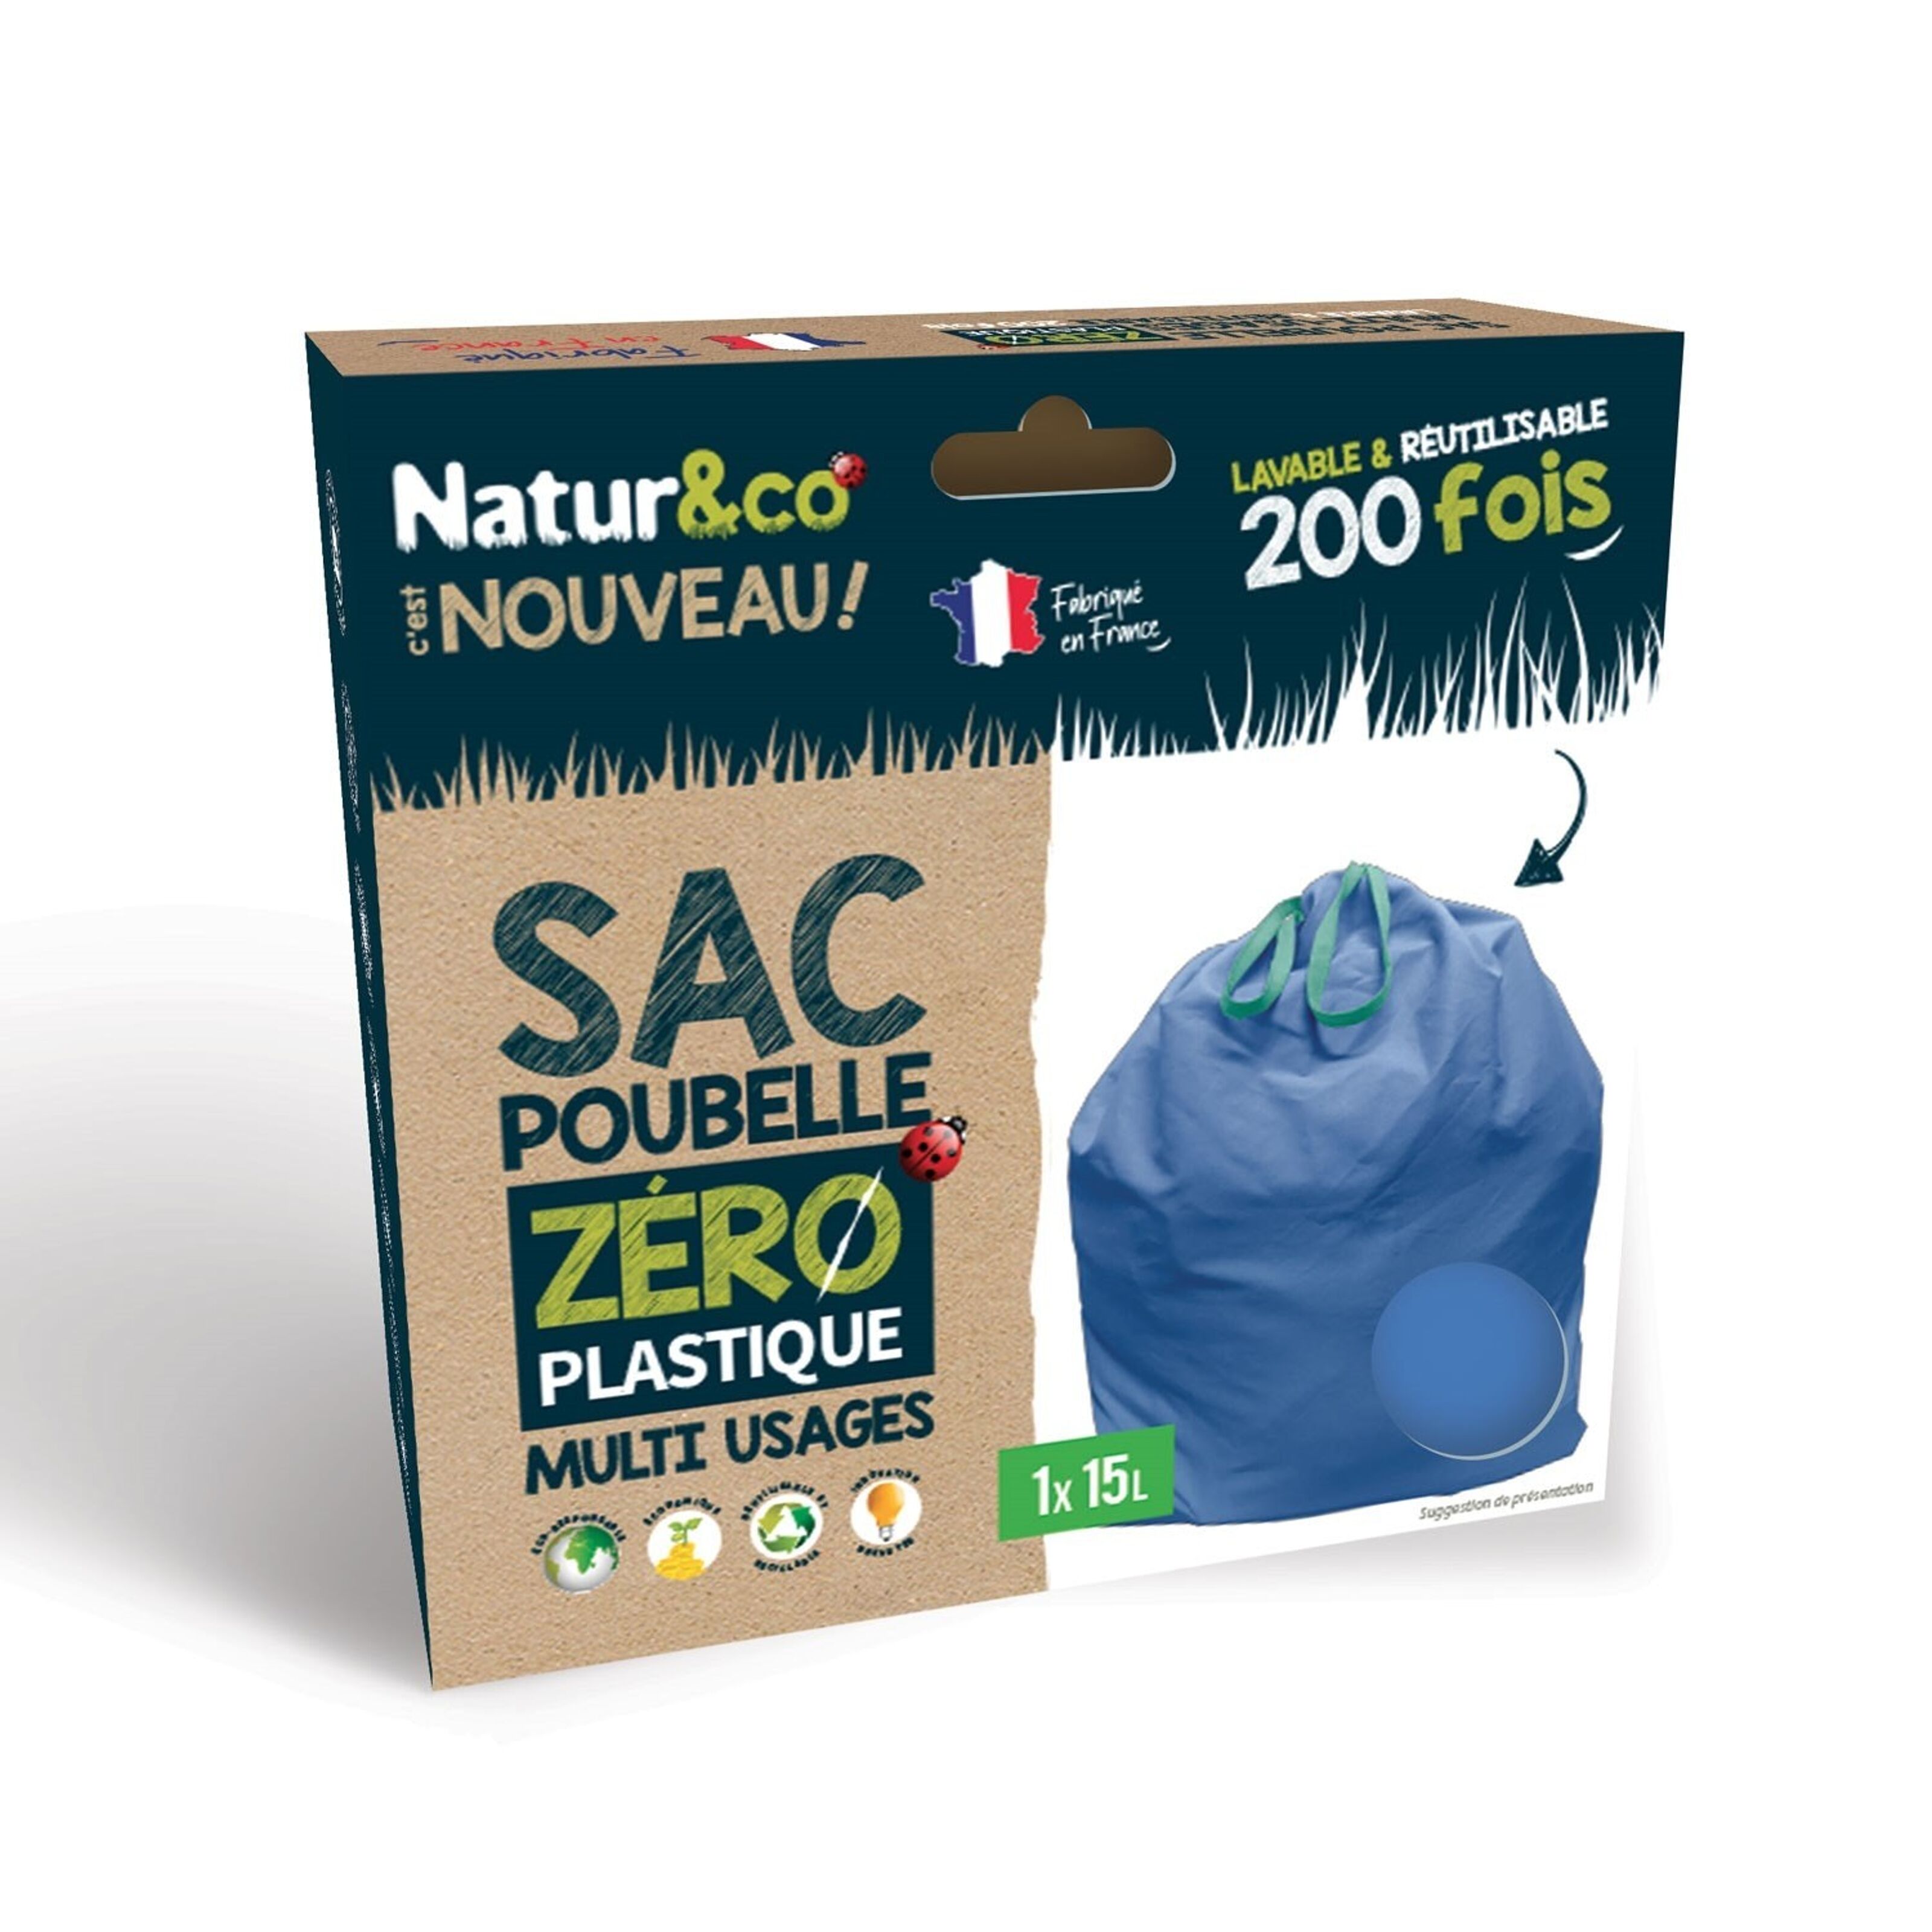 Achat Sac poubelle ZERO PLASTIQUE Multi-Usages 15L X1 Natur&co en gros